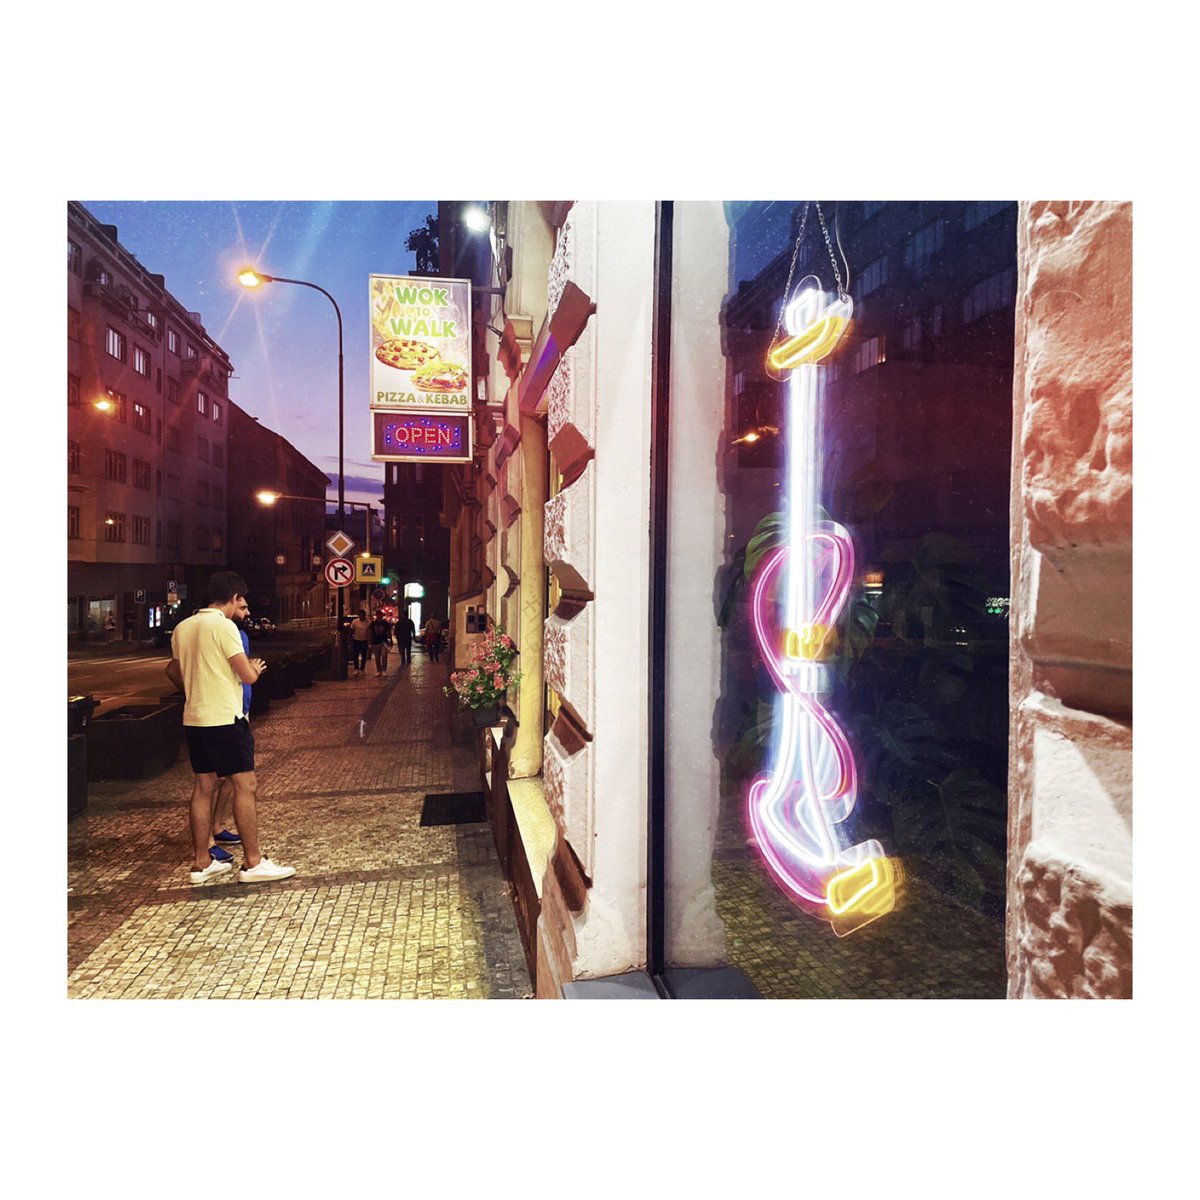 « Open »
…
📷 @rgkarkovsky 

#streetphotography #neonphotography #sign #city #streetphotographers #writersofinstagram #photographersofinstagram #lensculture #ostend